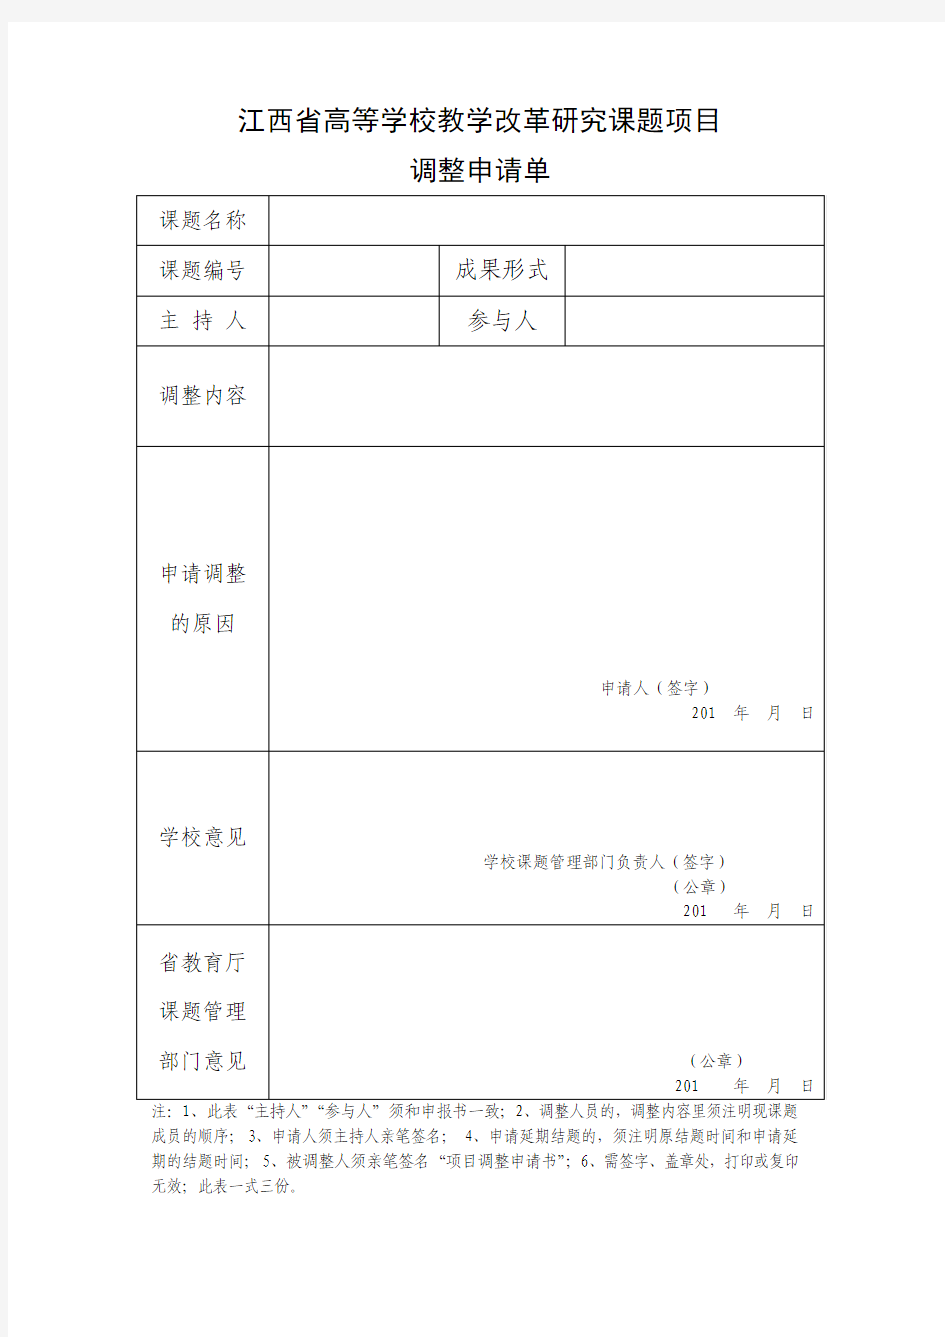 江西省高等学校教学改革研究课题项目调整申请单及申请书